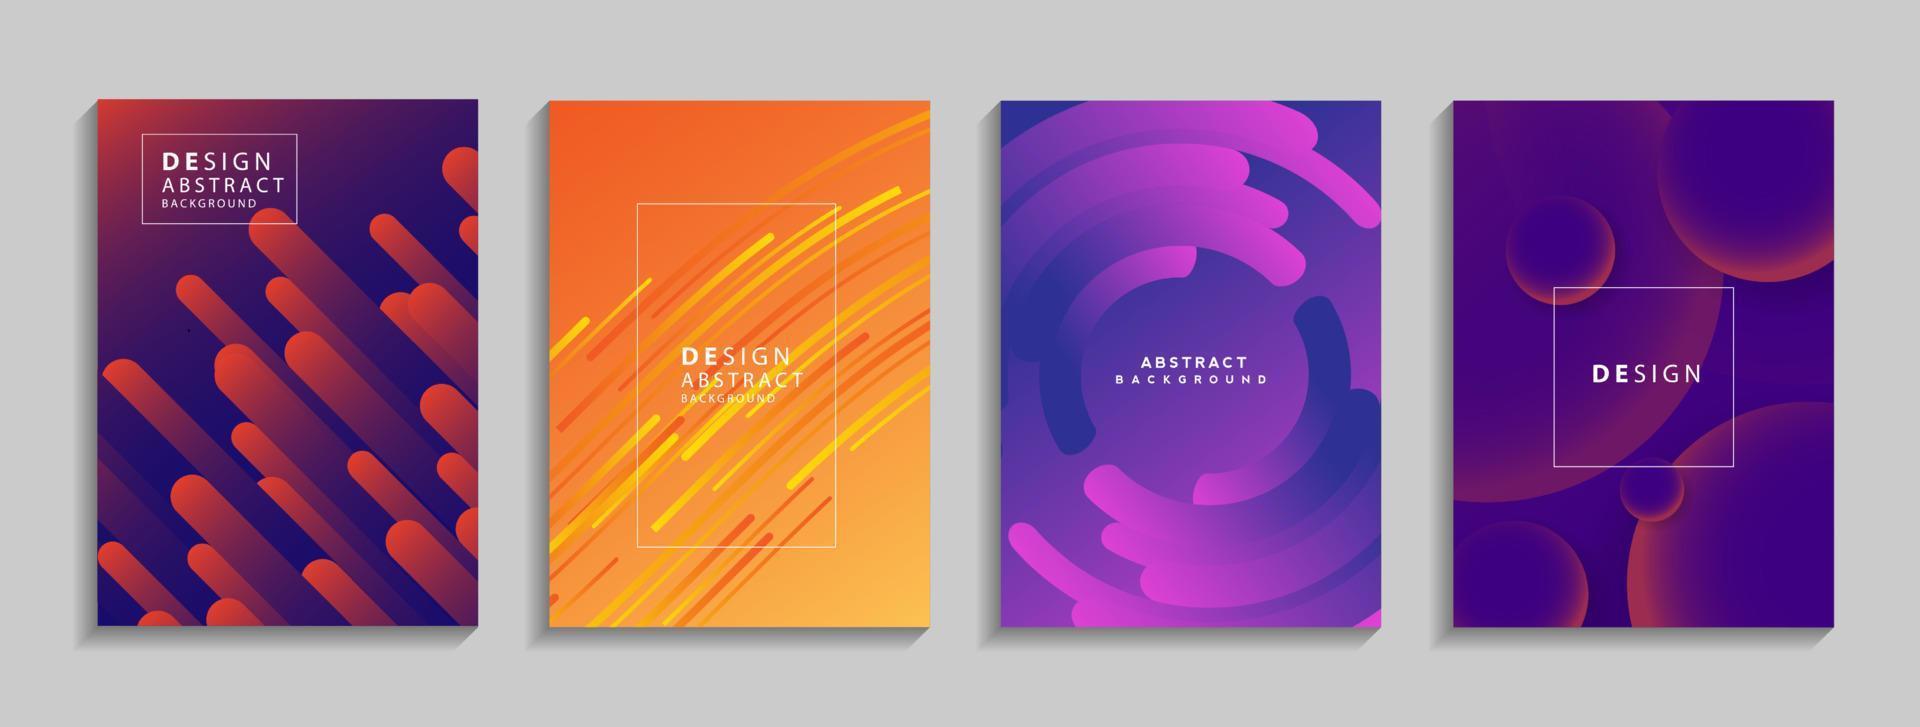 moderne kleurrijke geometrische abstracte achtergrond. vloeiende vormensamenstelling voor spandoek, poster, boek of web. vector illustratie ontwerp eps10.